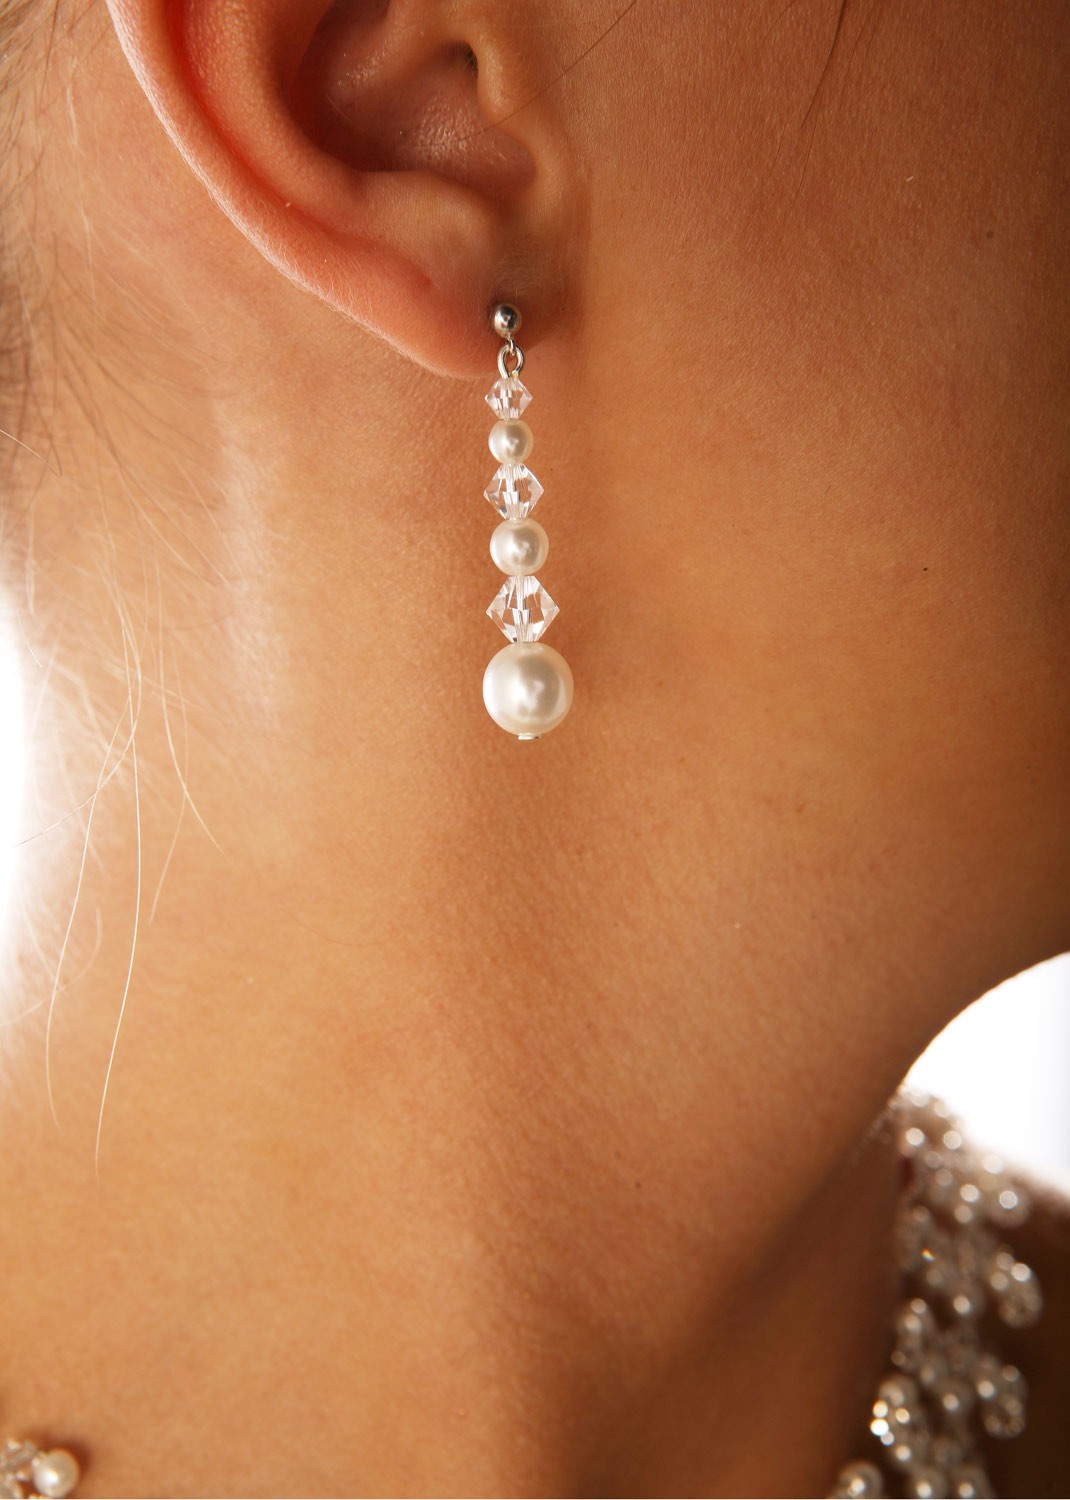 Chaud argent massif cristal étoile perle oreille Clous D'Oreilles Pour Femmes Mariage Bijoux 